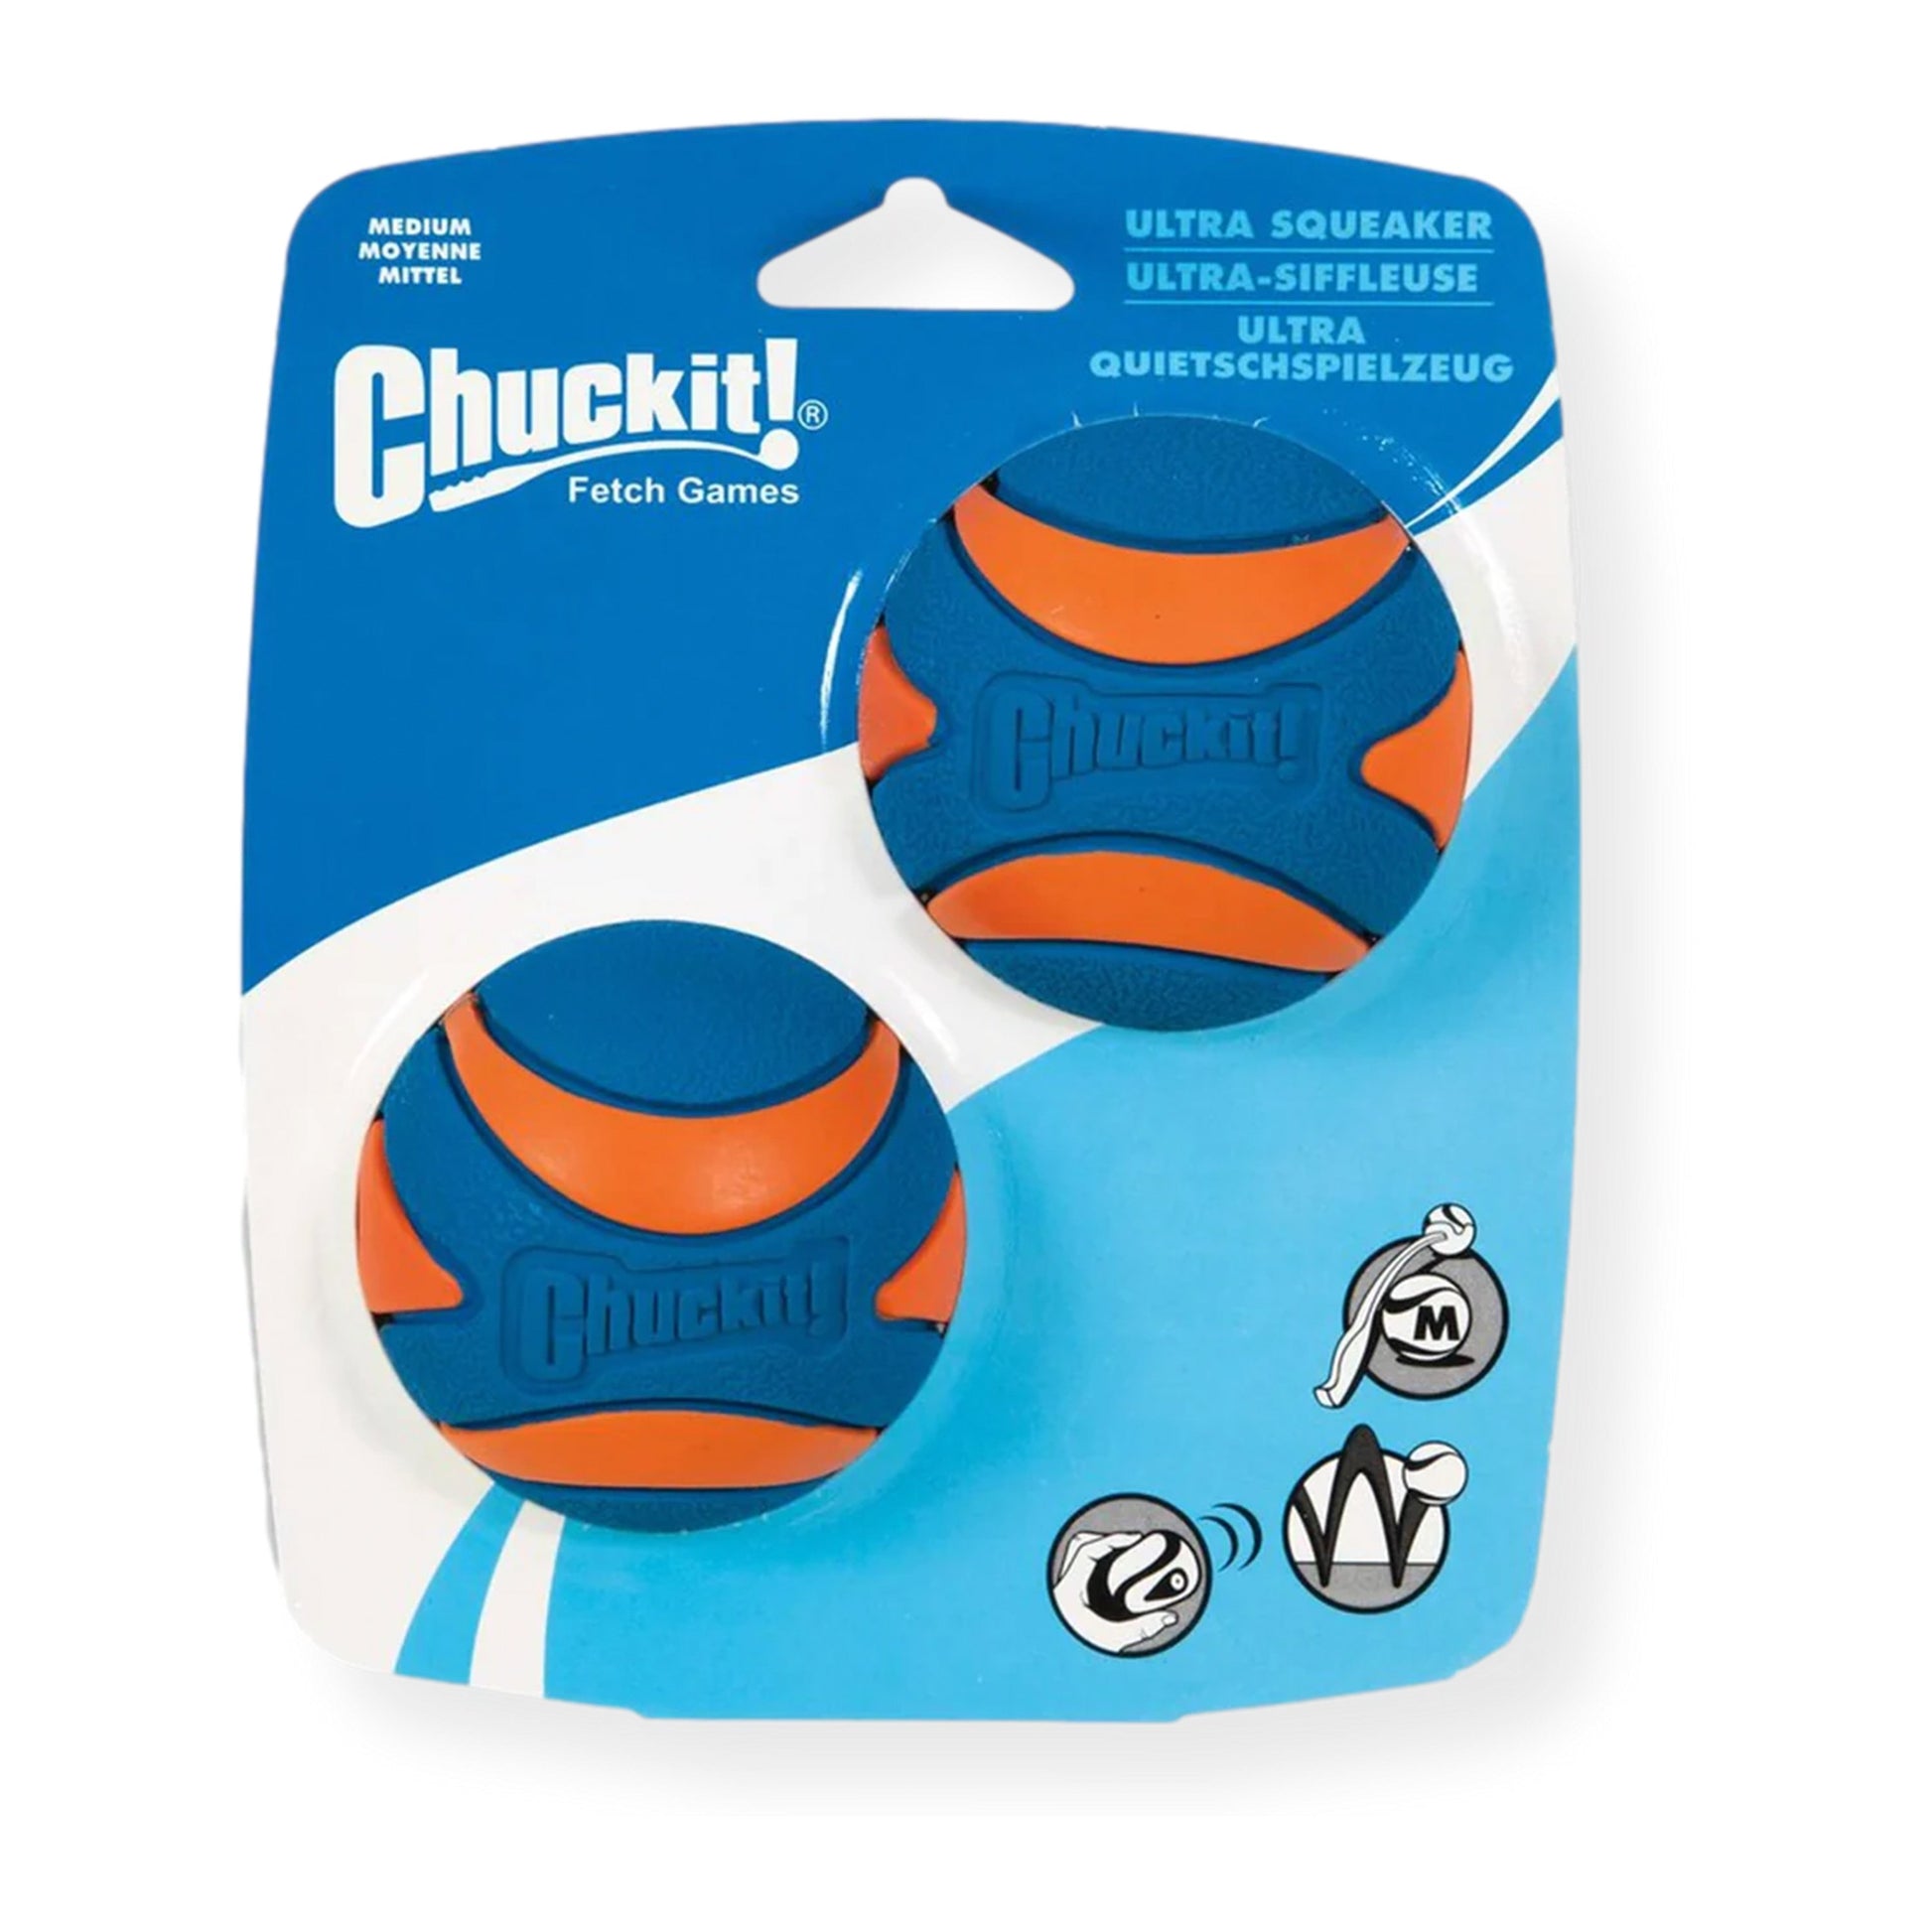 Chuckit! Ultra Squeaker Medium 2 Pack, Chuckit!